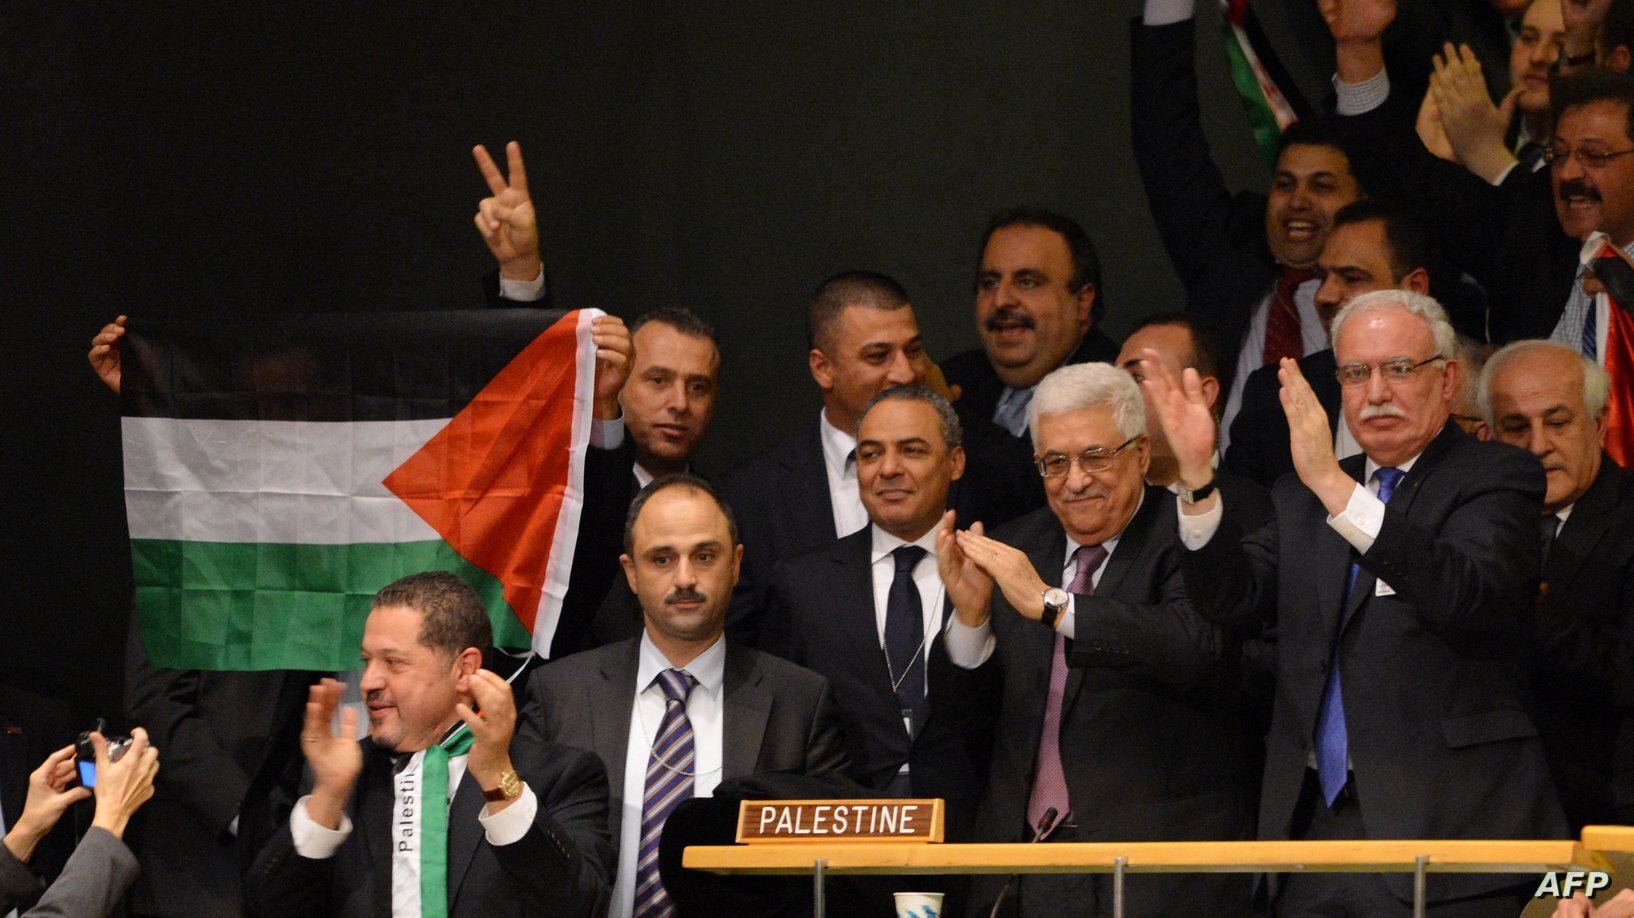 شادی هیات فلسطین در مجمع عمومی سازمان ملل متحد بعد از رای مثبت اکثریت اعضای مجمع به عضویت ناظر فلسطین در سازمان ملل متحد